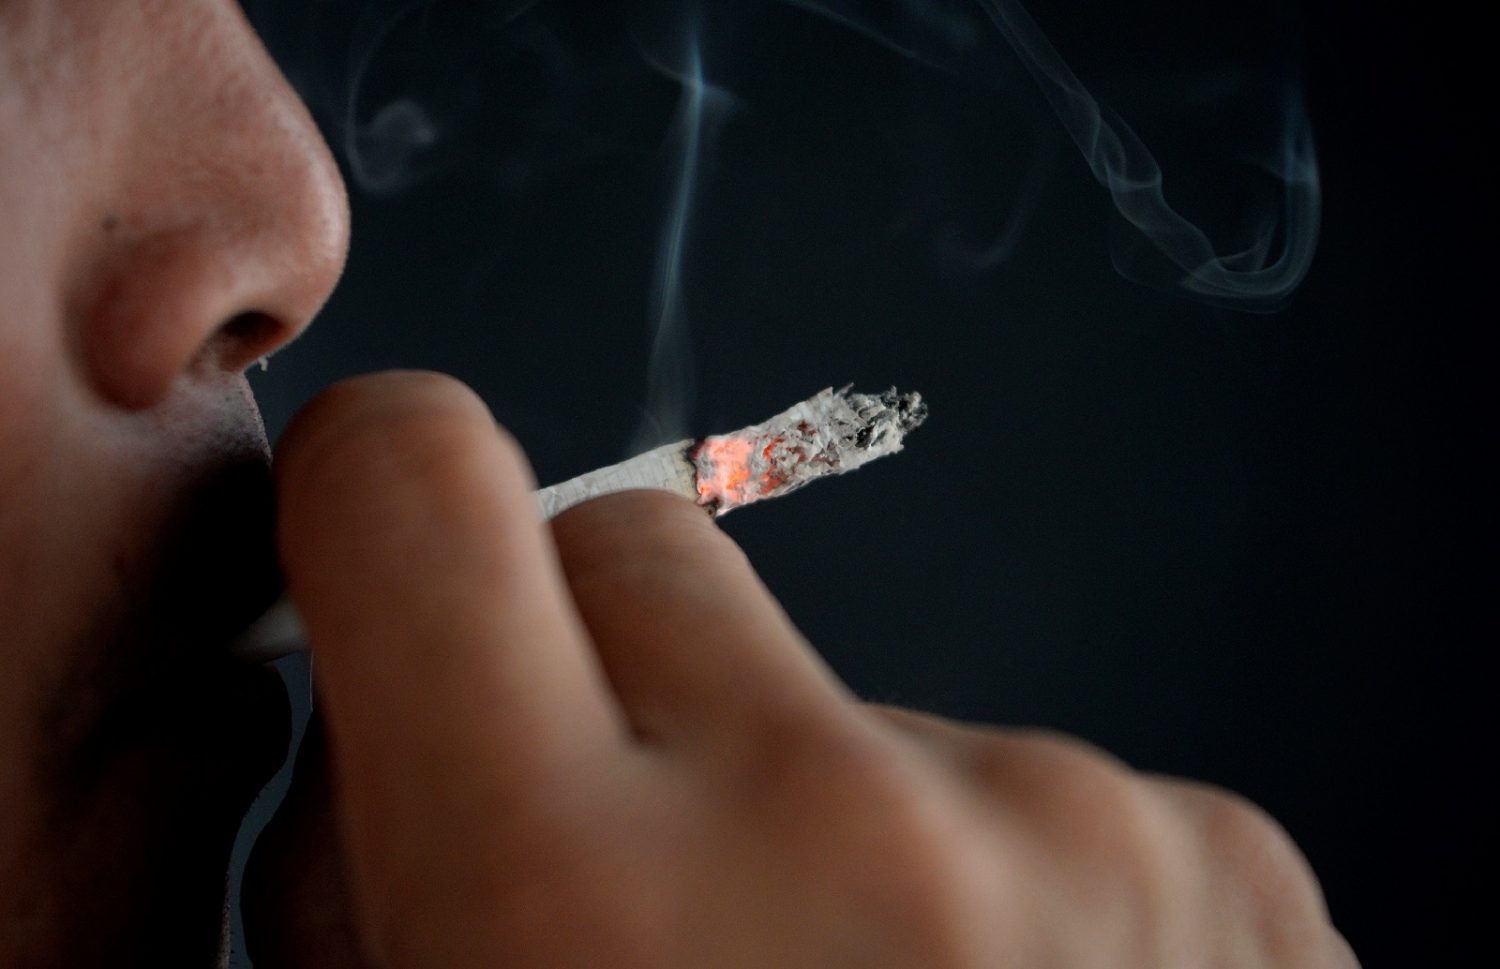 A nicotina e outras milhares de substâncias (mais de sete mil) atuam rapidamente pelo corpo, atingindo os mesmos receptores cerebrais que a cocaína. Foto Noel Celis/AFP